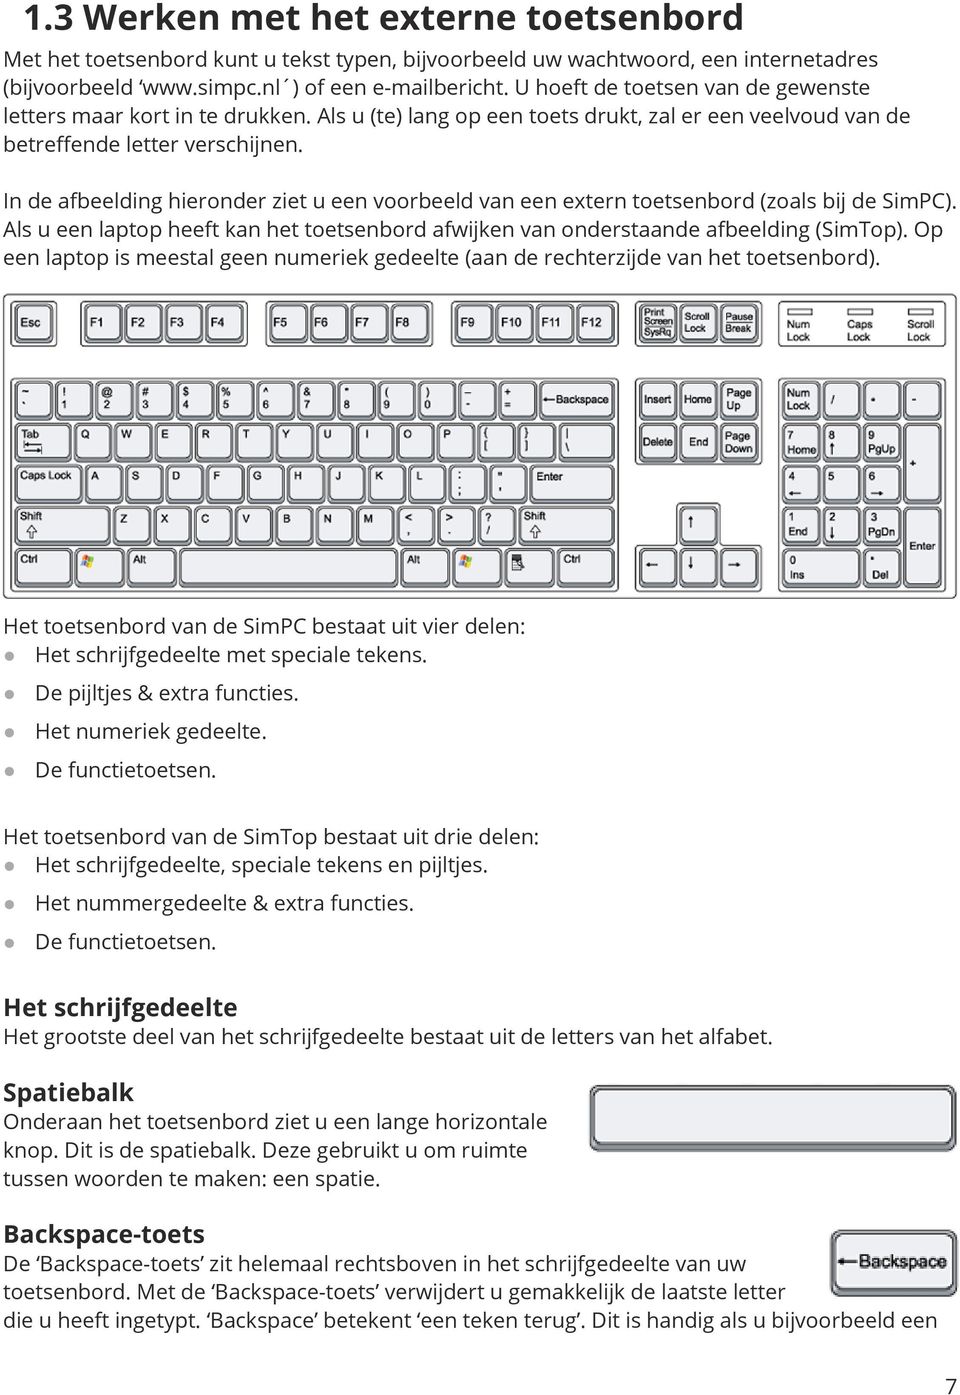 In de afbeelding hieronder ziet u een voorbeeld van een extern toetsenbord (zoals bij de SimPC). Als u een laptop heeft kan het toetsenbord afwijken van onderstaande afbeelding (SimTop).